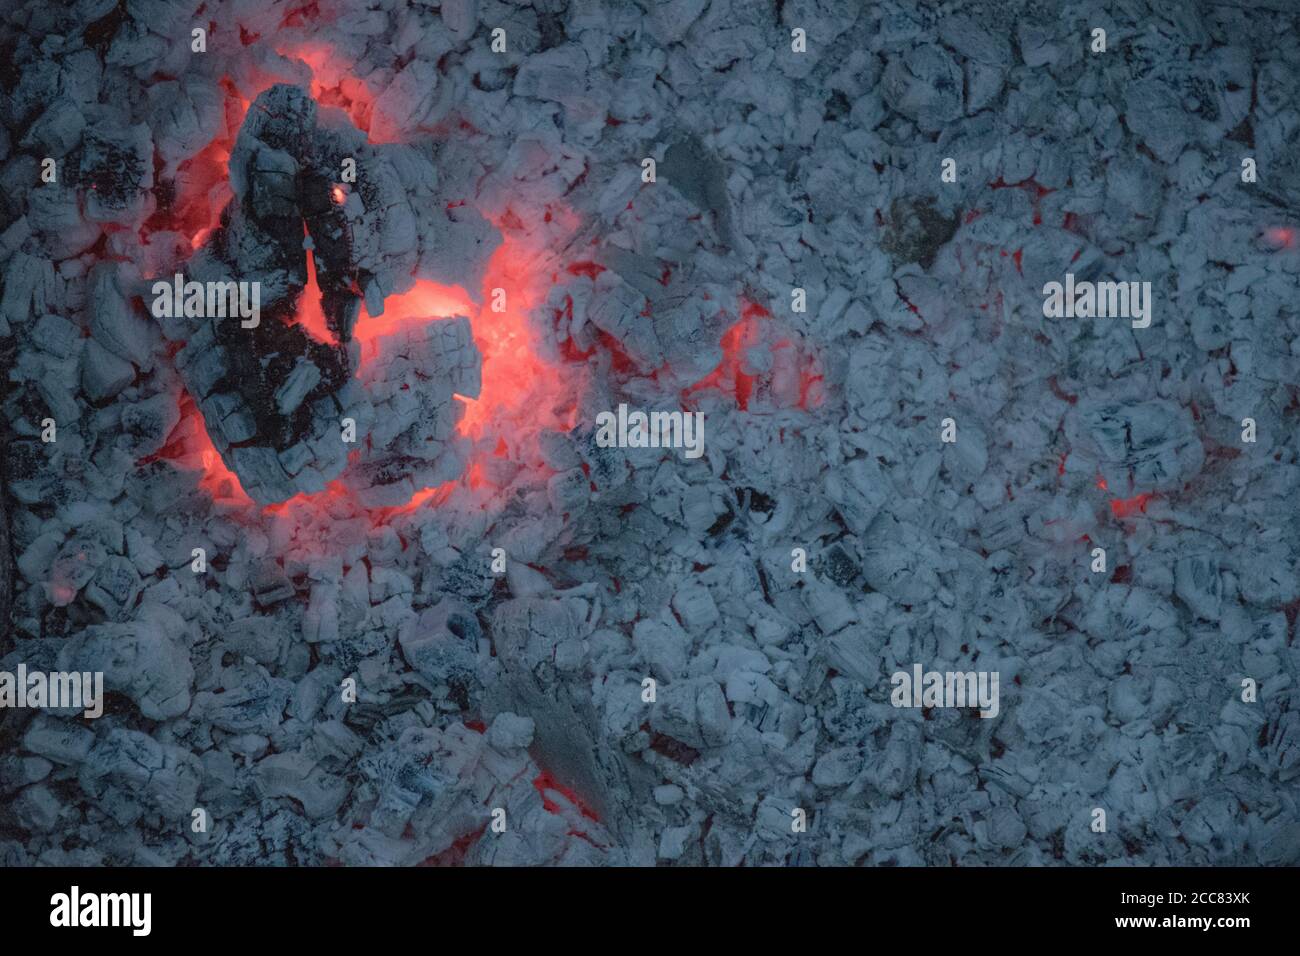 Große rissige Stück Schwelbrennholz log mit roter Flamme innen und graue Asche Hintergrund. Verbranntes Lagerfeuer Textur Nahaufnahme. Brandung aus Holzkohle Stockfoto